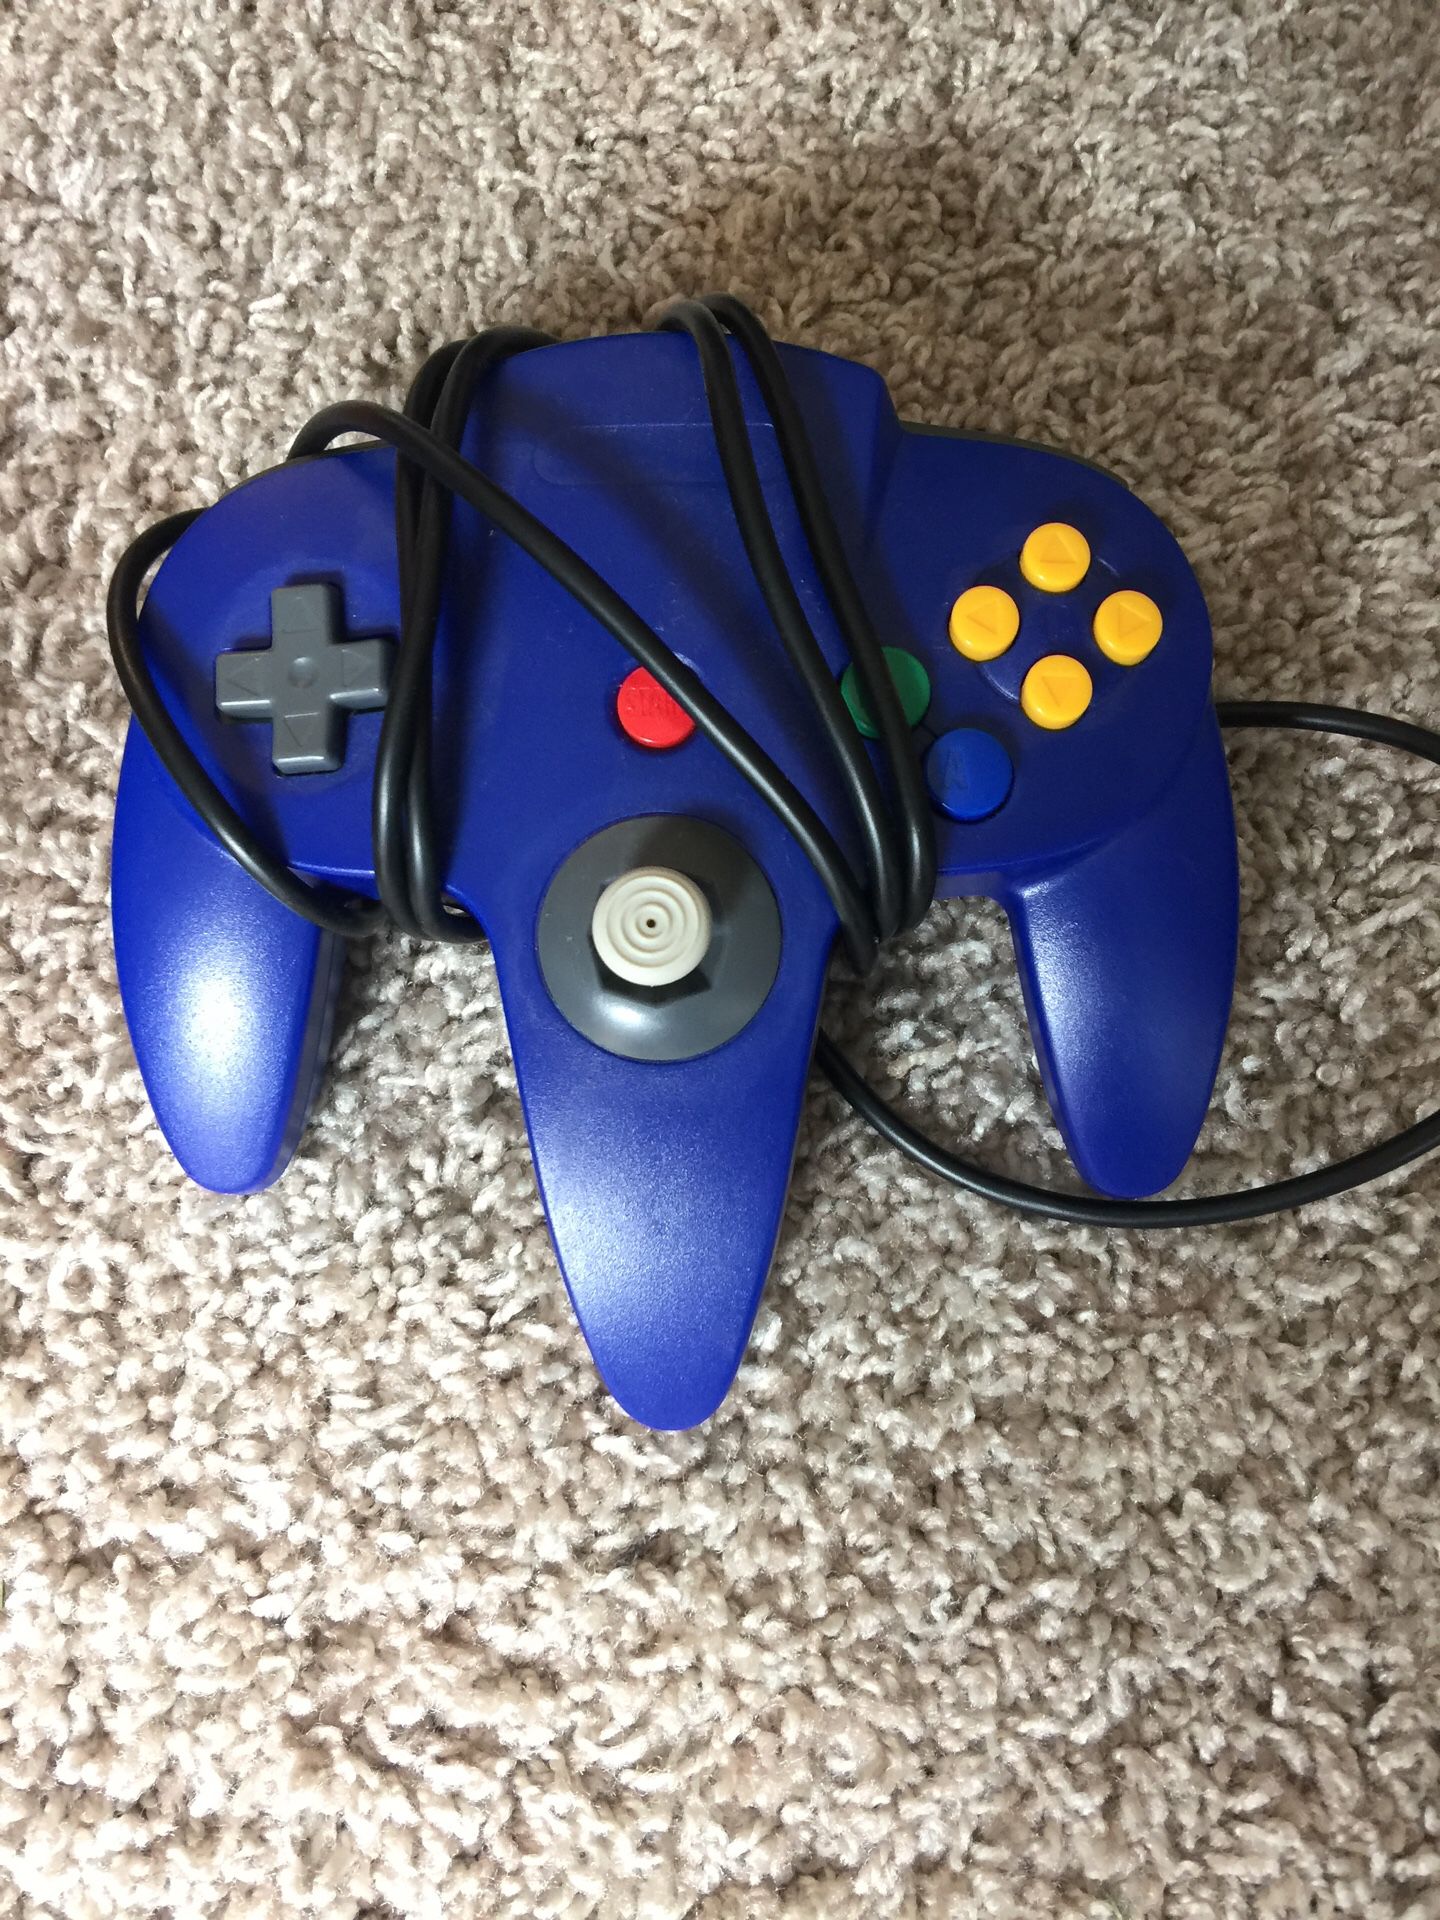 Blue Nintendo 64 Game Controller